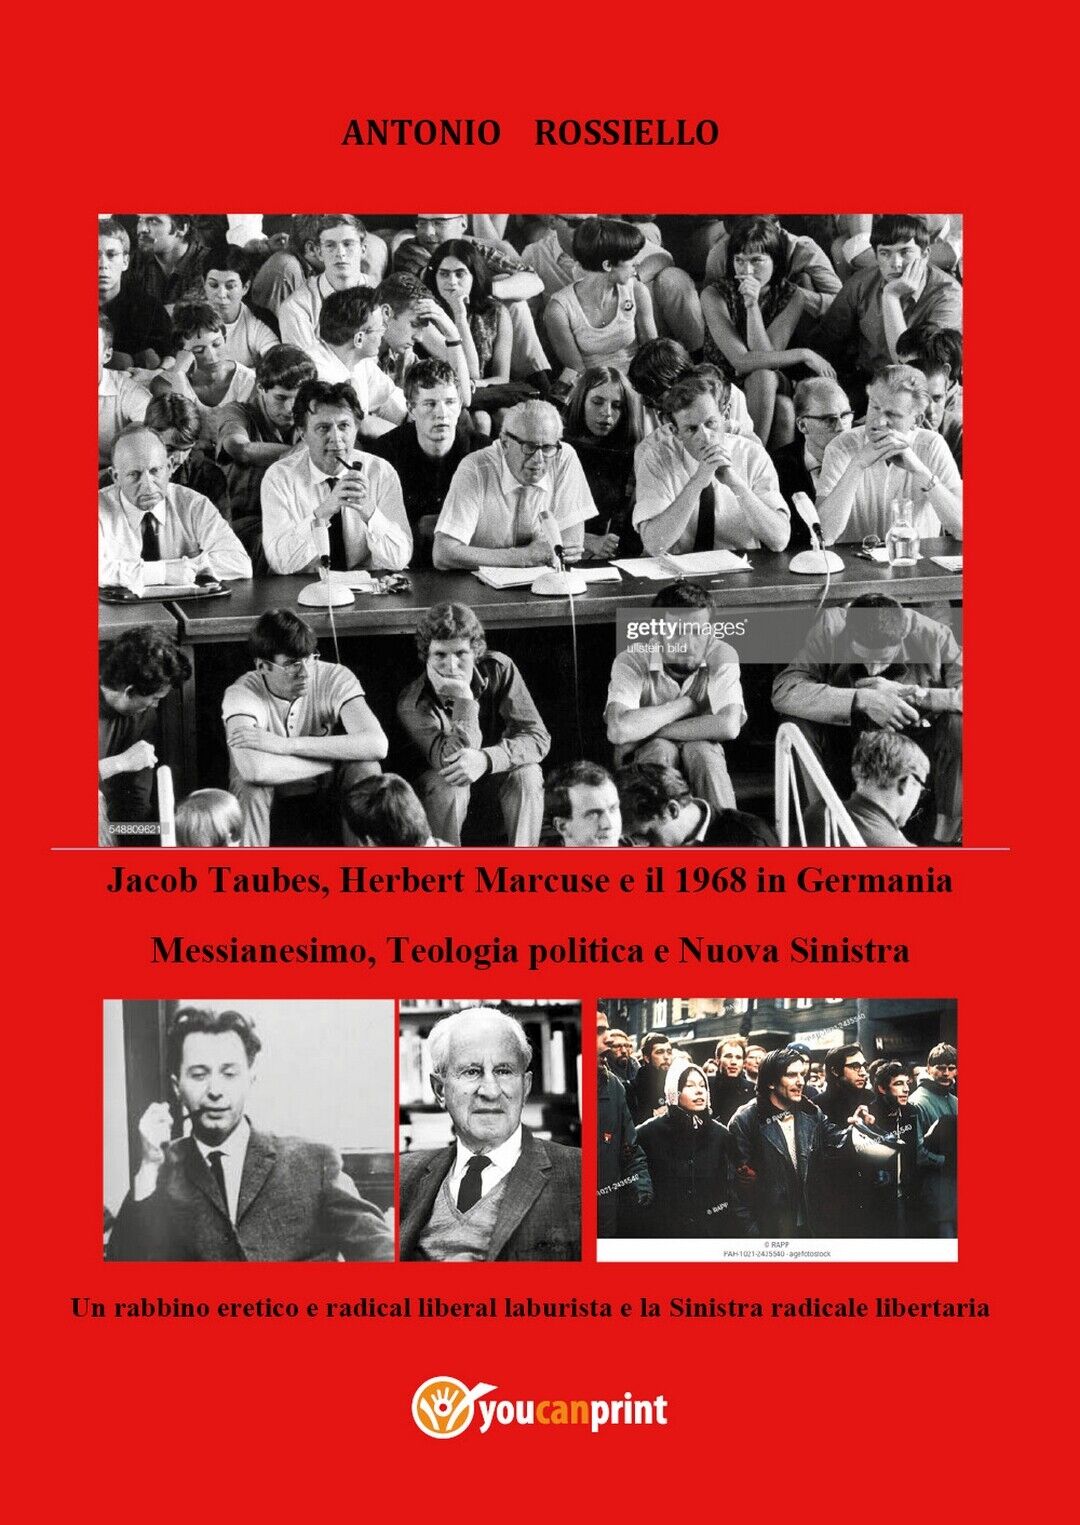 Jacob Taubes, Herbert Marcuse e il 1968 in Germania, di Antonio Rossiello, 2020